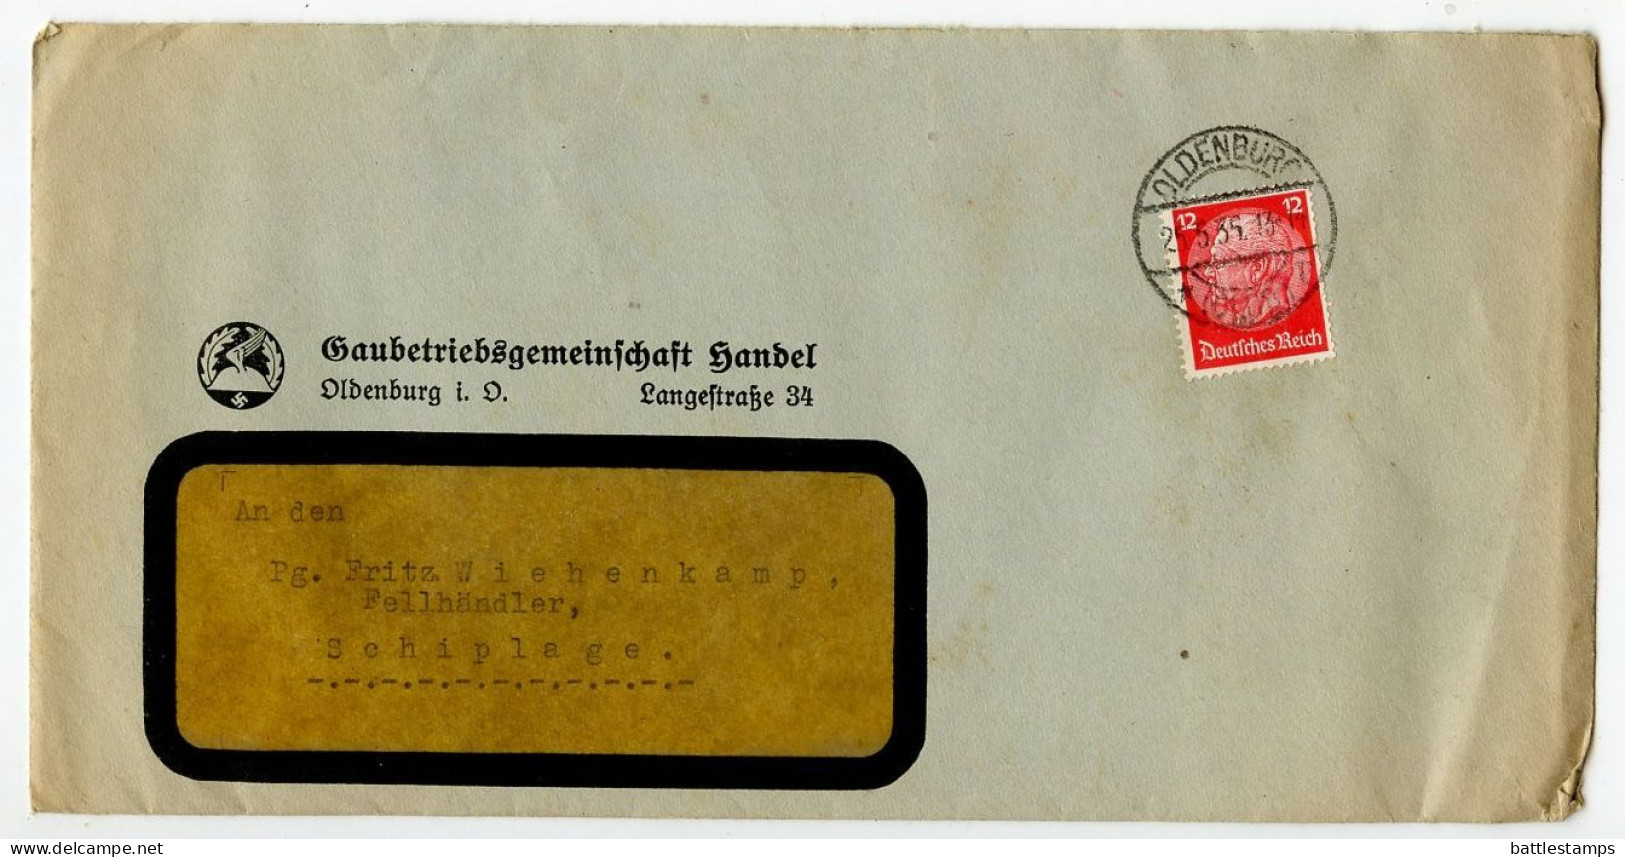 Germany 1935 Cover & Letter; Oldenburg - Gaubetriebsgemeinschaft Handel To Schiplage; 12pf. Hindenburg - Covers & Documents